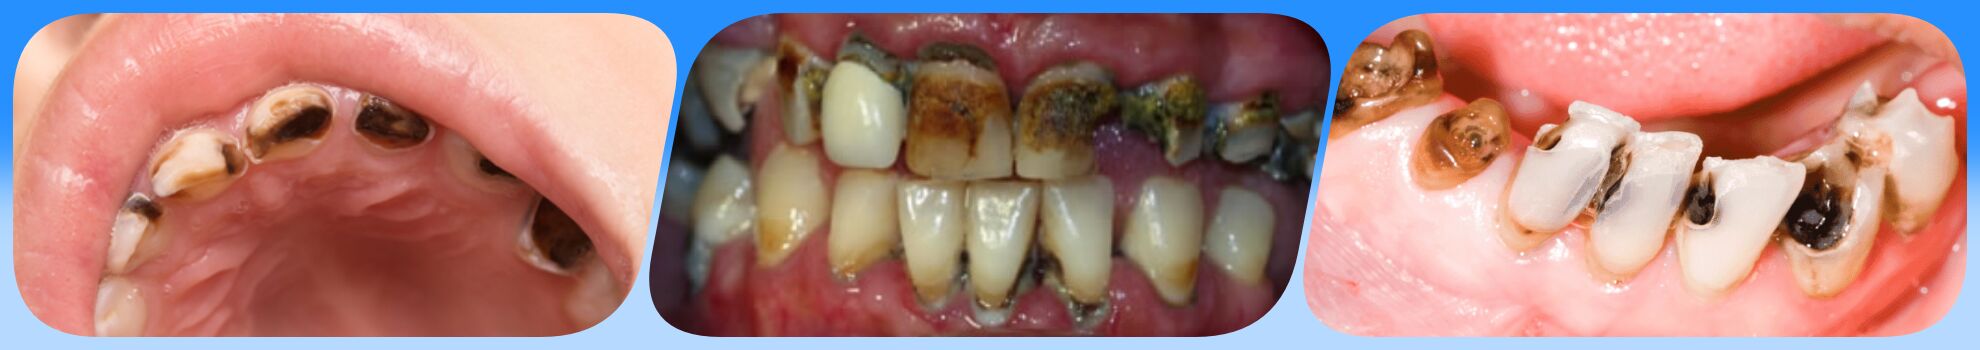 راه های جلوگیری از پوسیدگی دندان